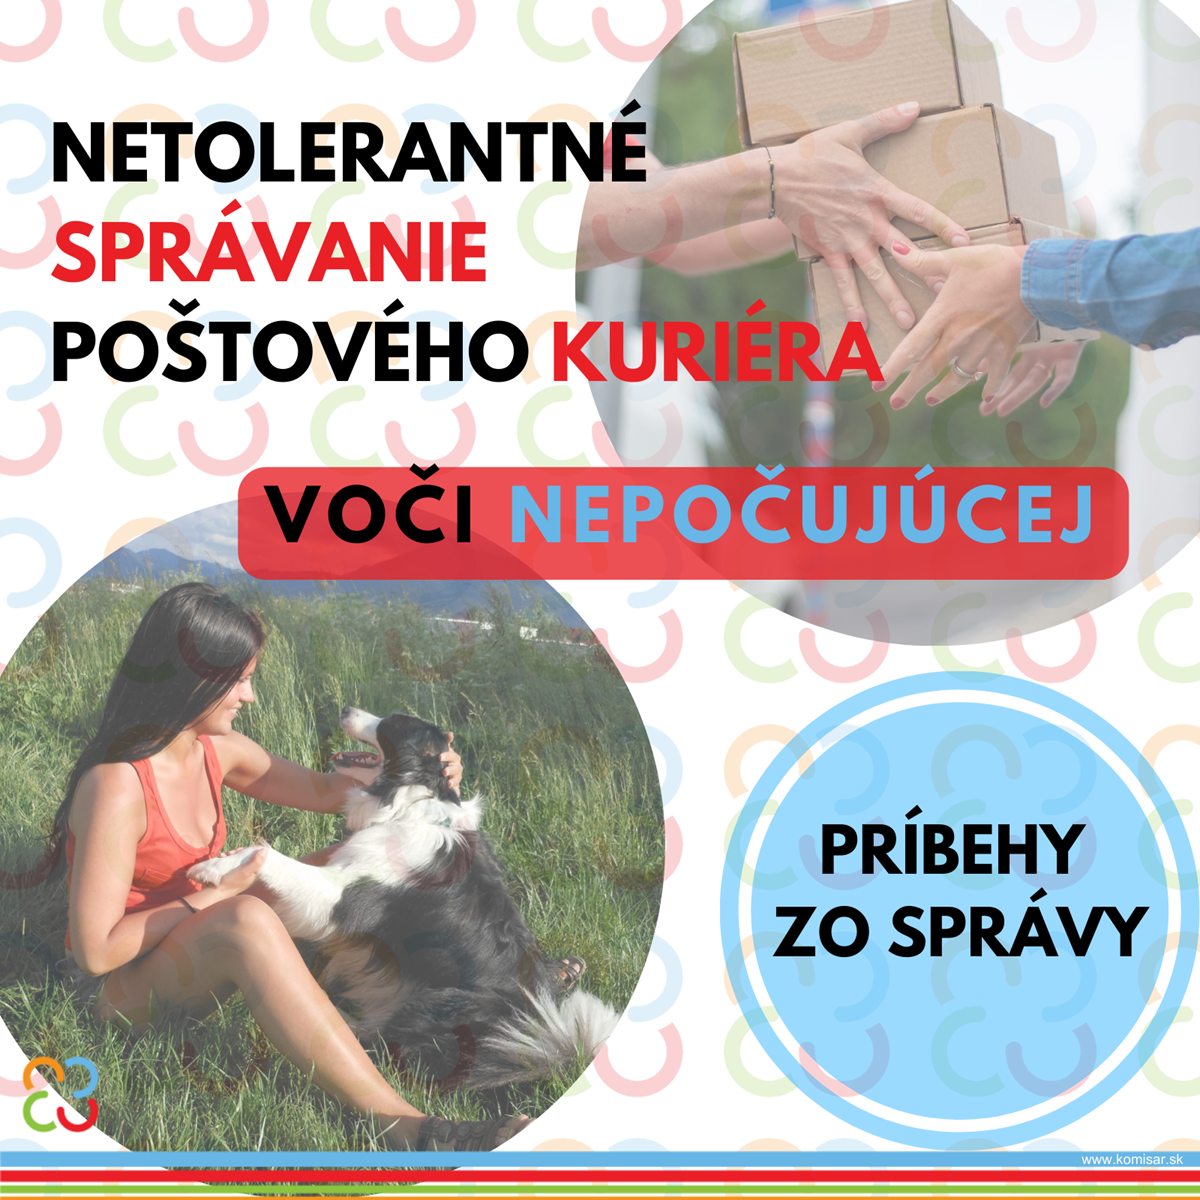 Príbeh zo správy: Netolerantné správanie kuriéra Slovenskej pošty voči nepočujúcej